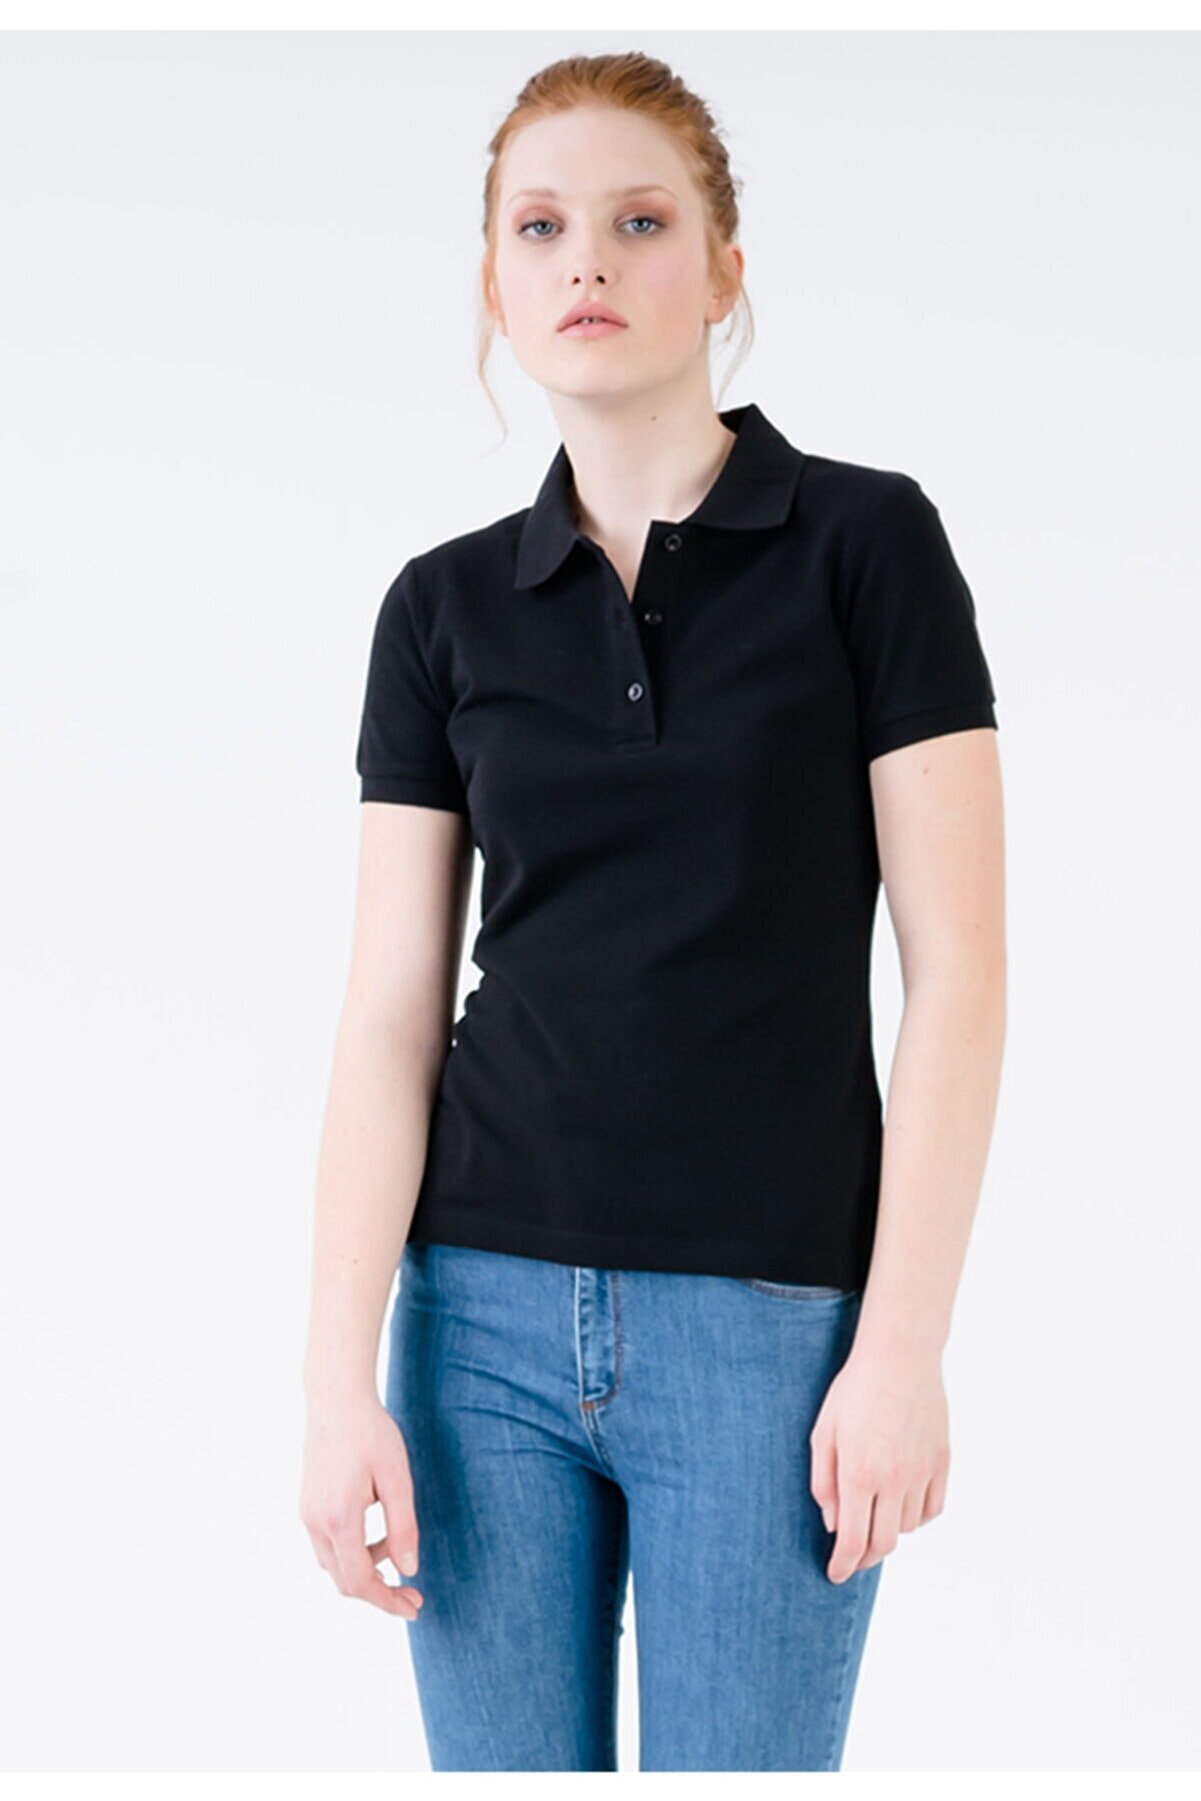 JAHR MARC Kadın Siyah Slim Fit Polo Yaka Yırtmaç Detaylı T-shirt